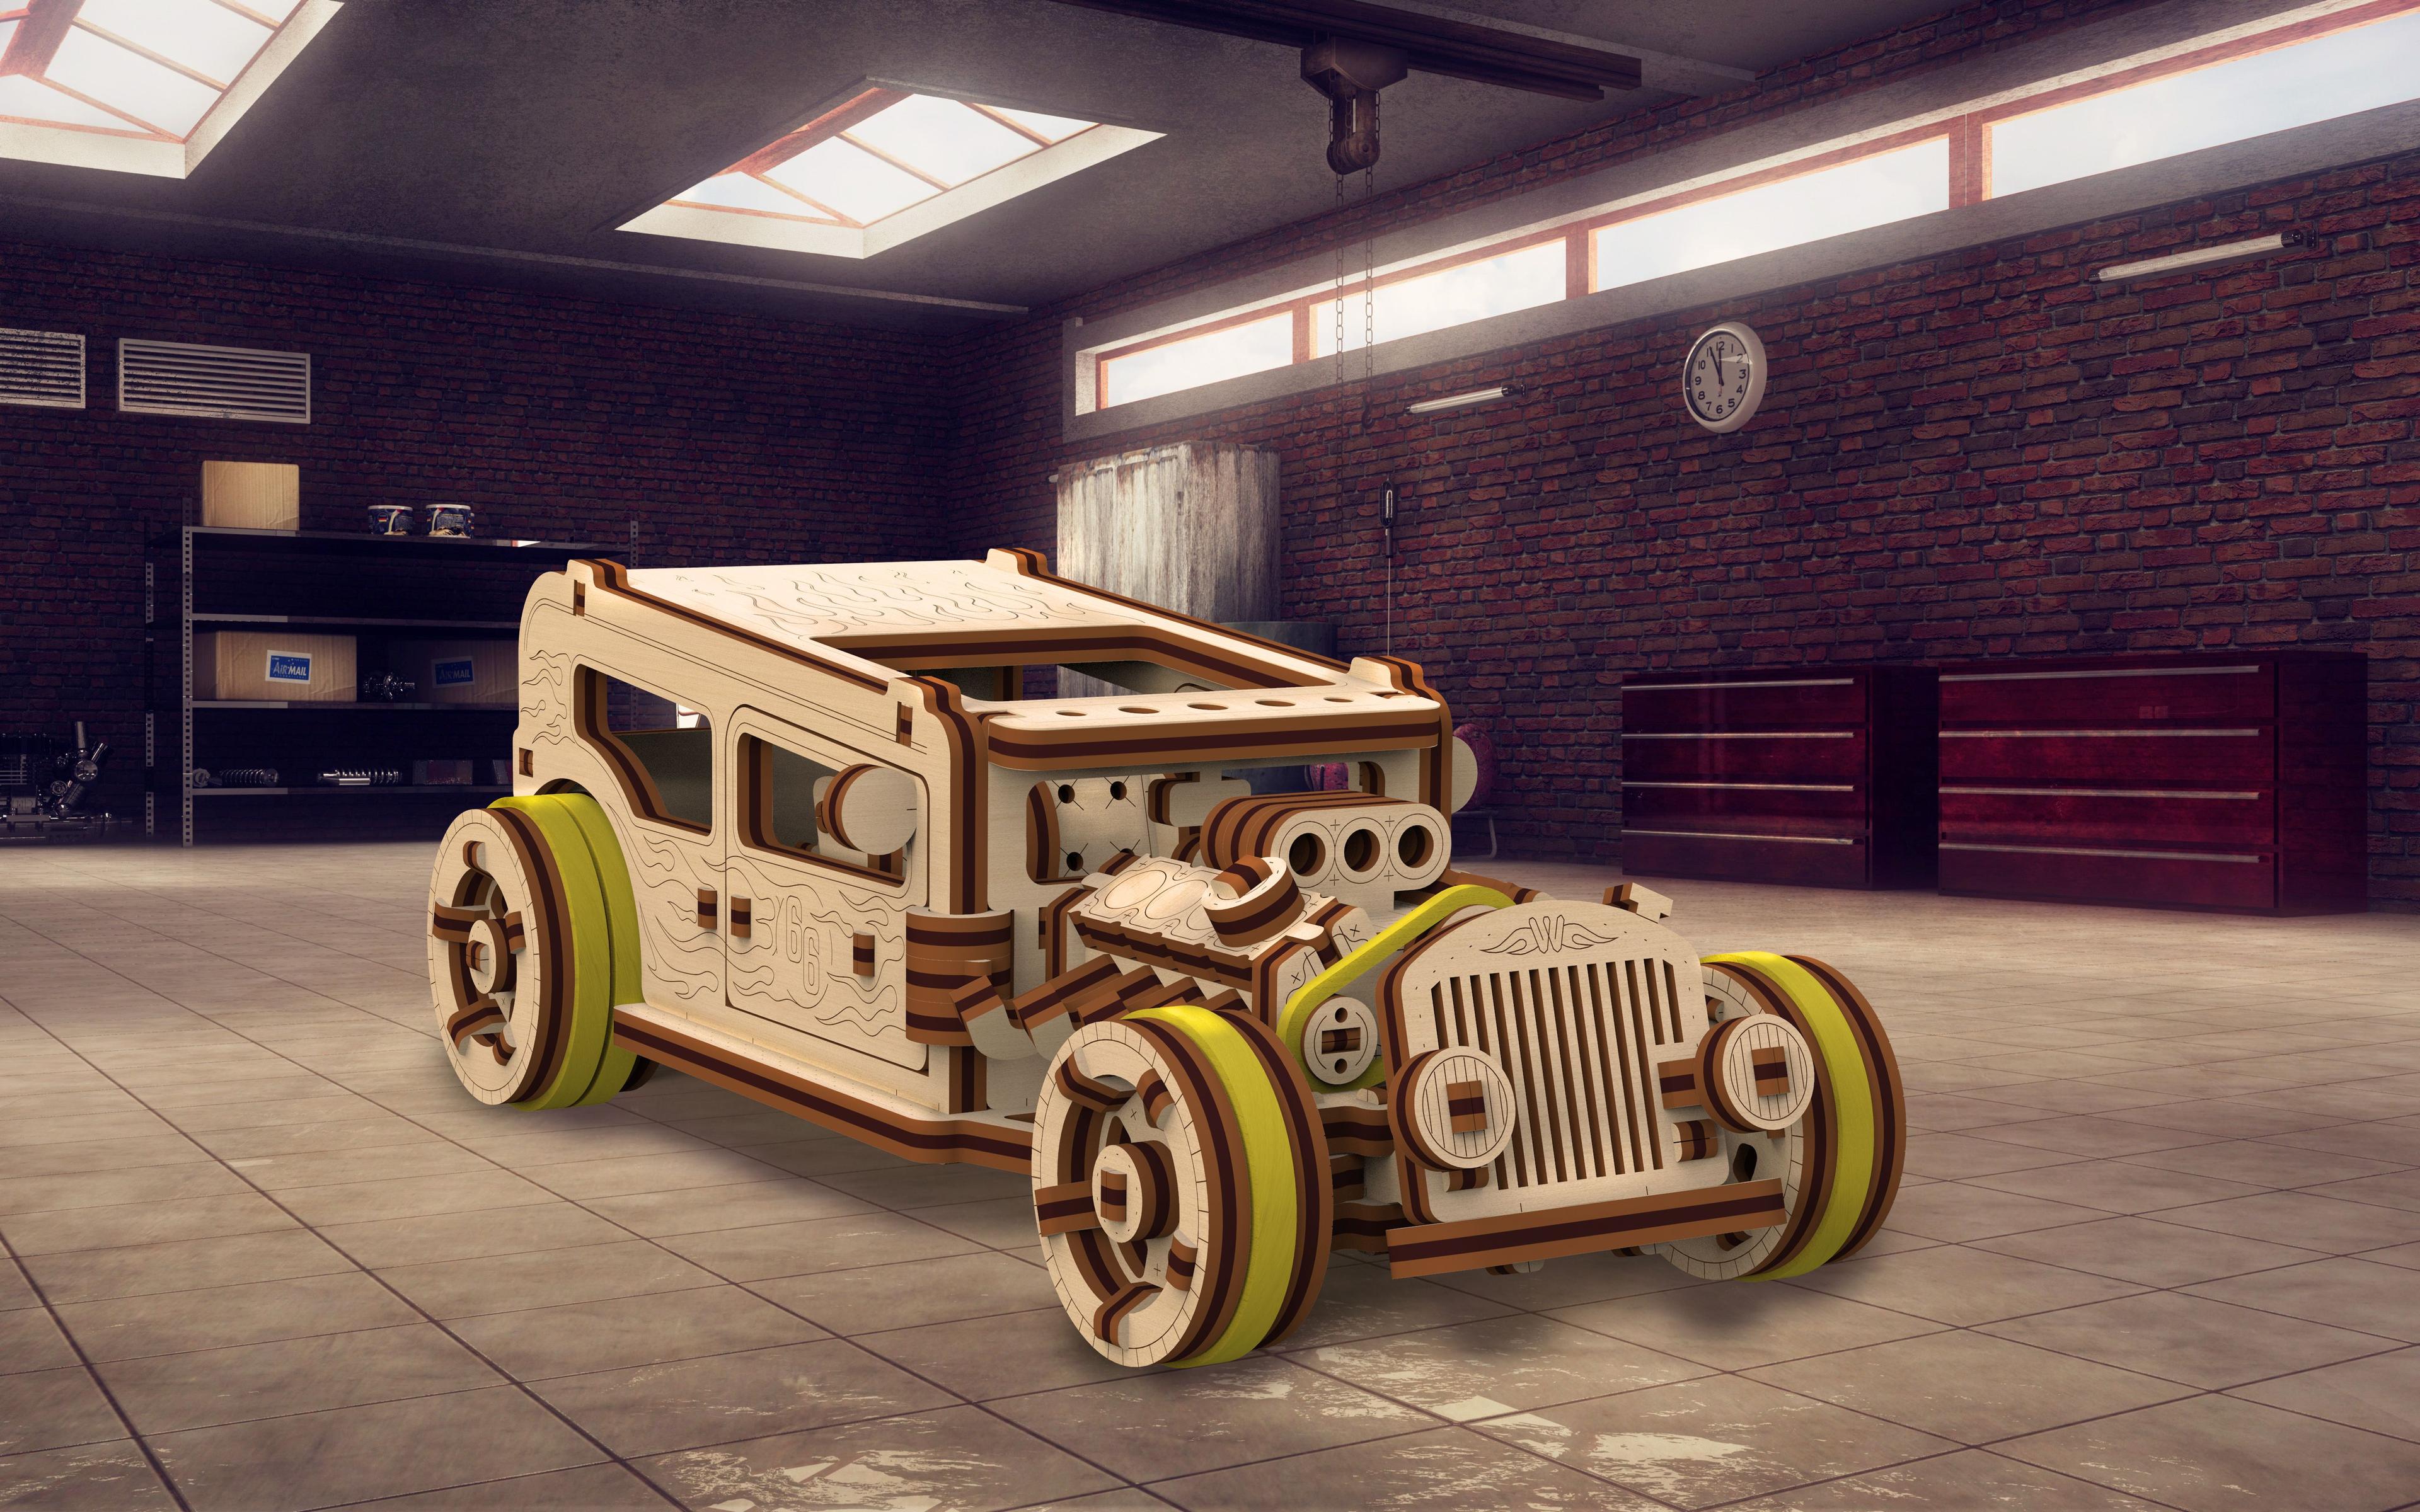 Wooden 3D Puzzle - Car Hot Rod